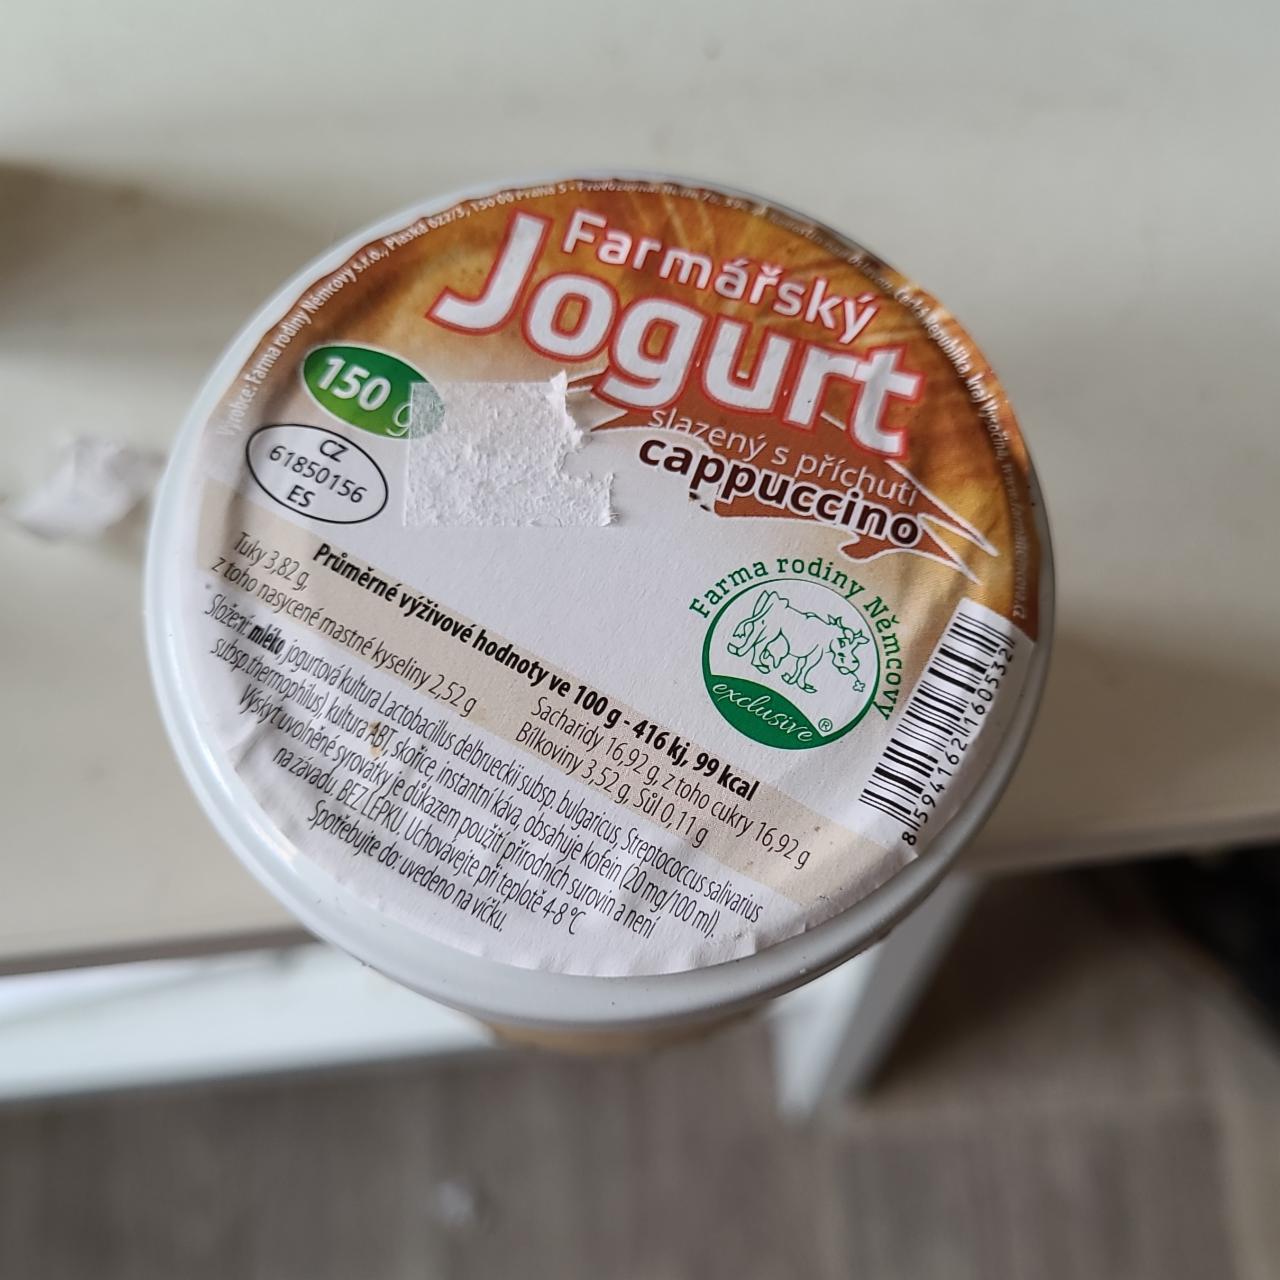 Fotografie - Farmářský jogurt slazený s příchutí cappuccino Farma rodiny Němcovy